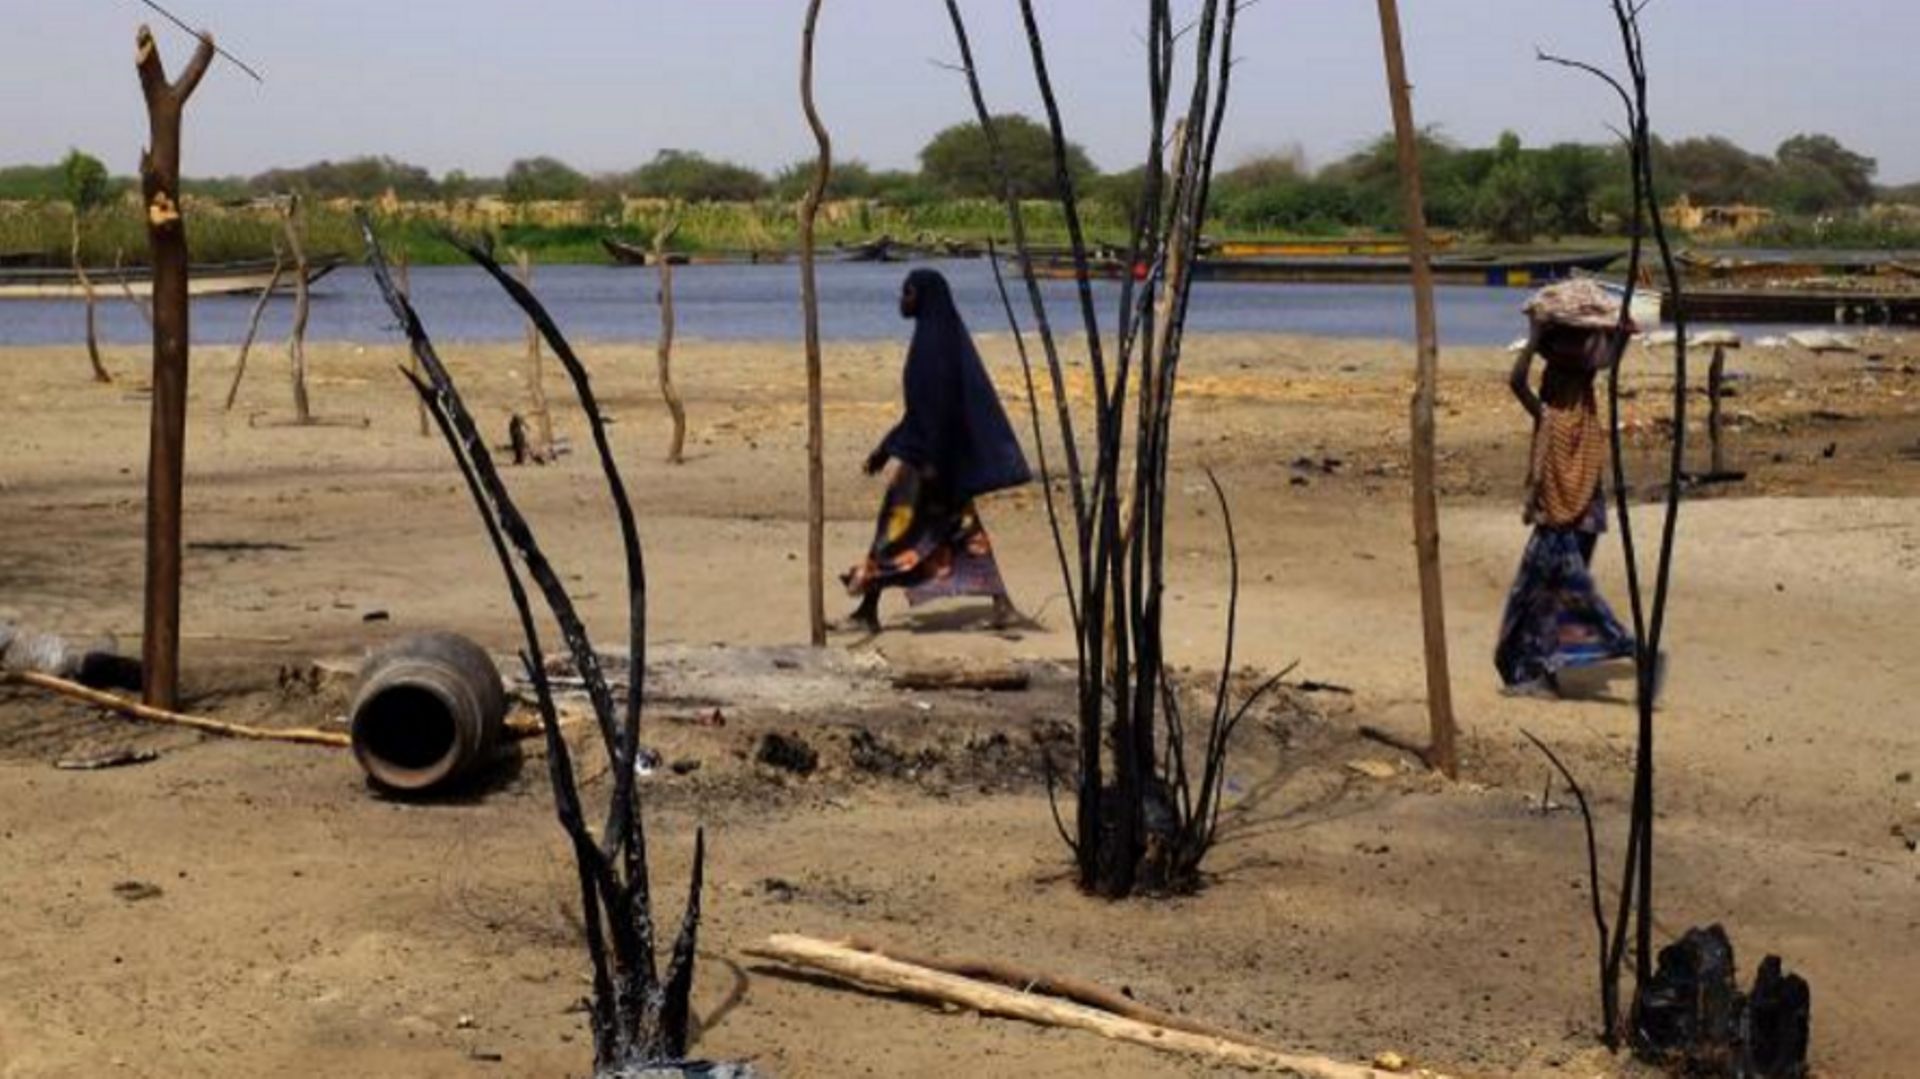  Des femmes tchadiennes marchent près de maisons détruites, dans le village de N'Gouboua, près du Lac Tchad, le 5 mars 2015. Les combattants de Boko Haram militants sont arrivés dans le village le 13 février dernier, ont brûlé des maisons, et tué une diza